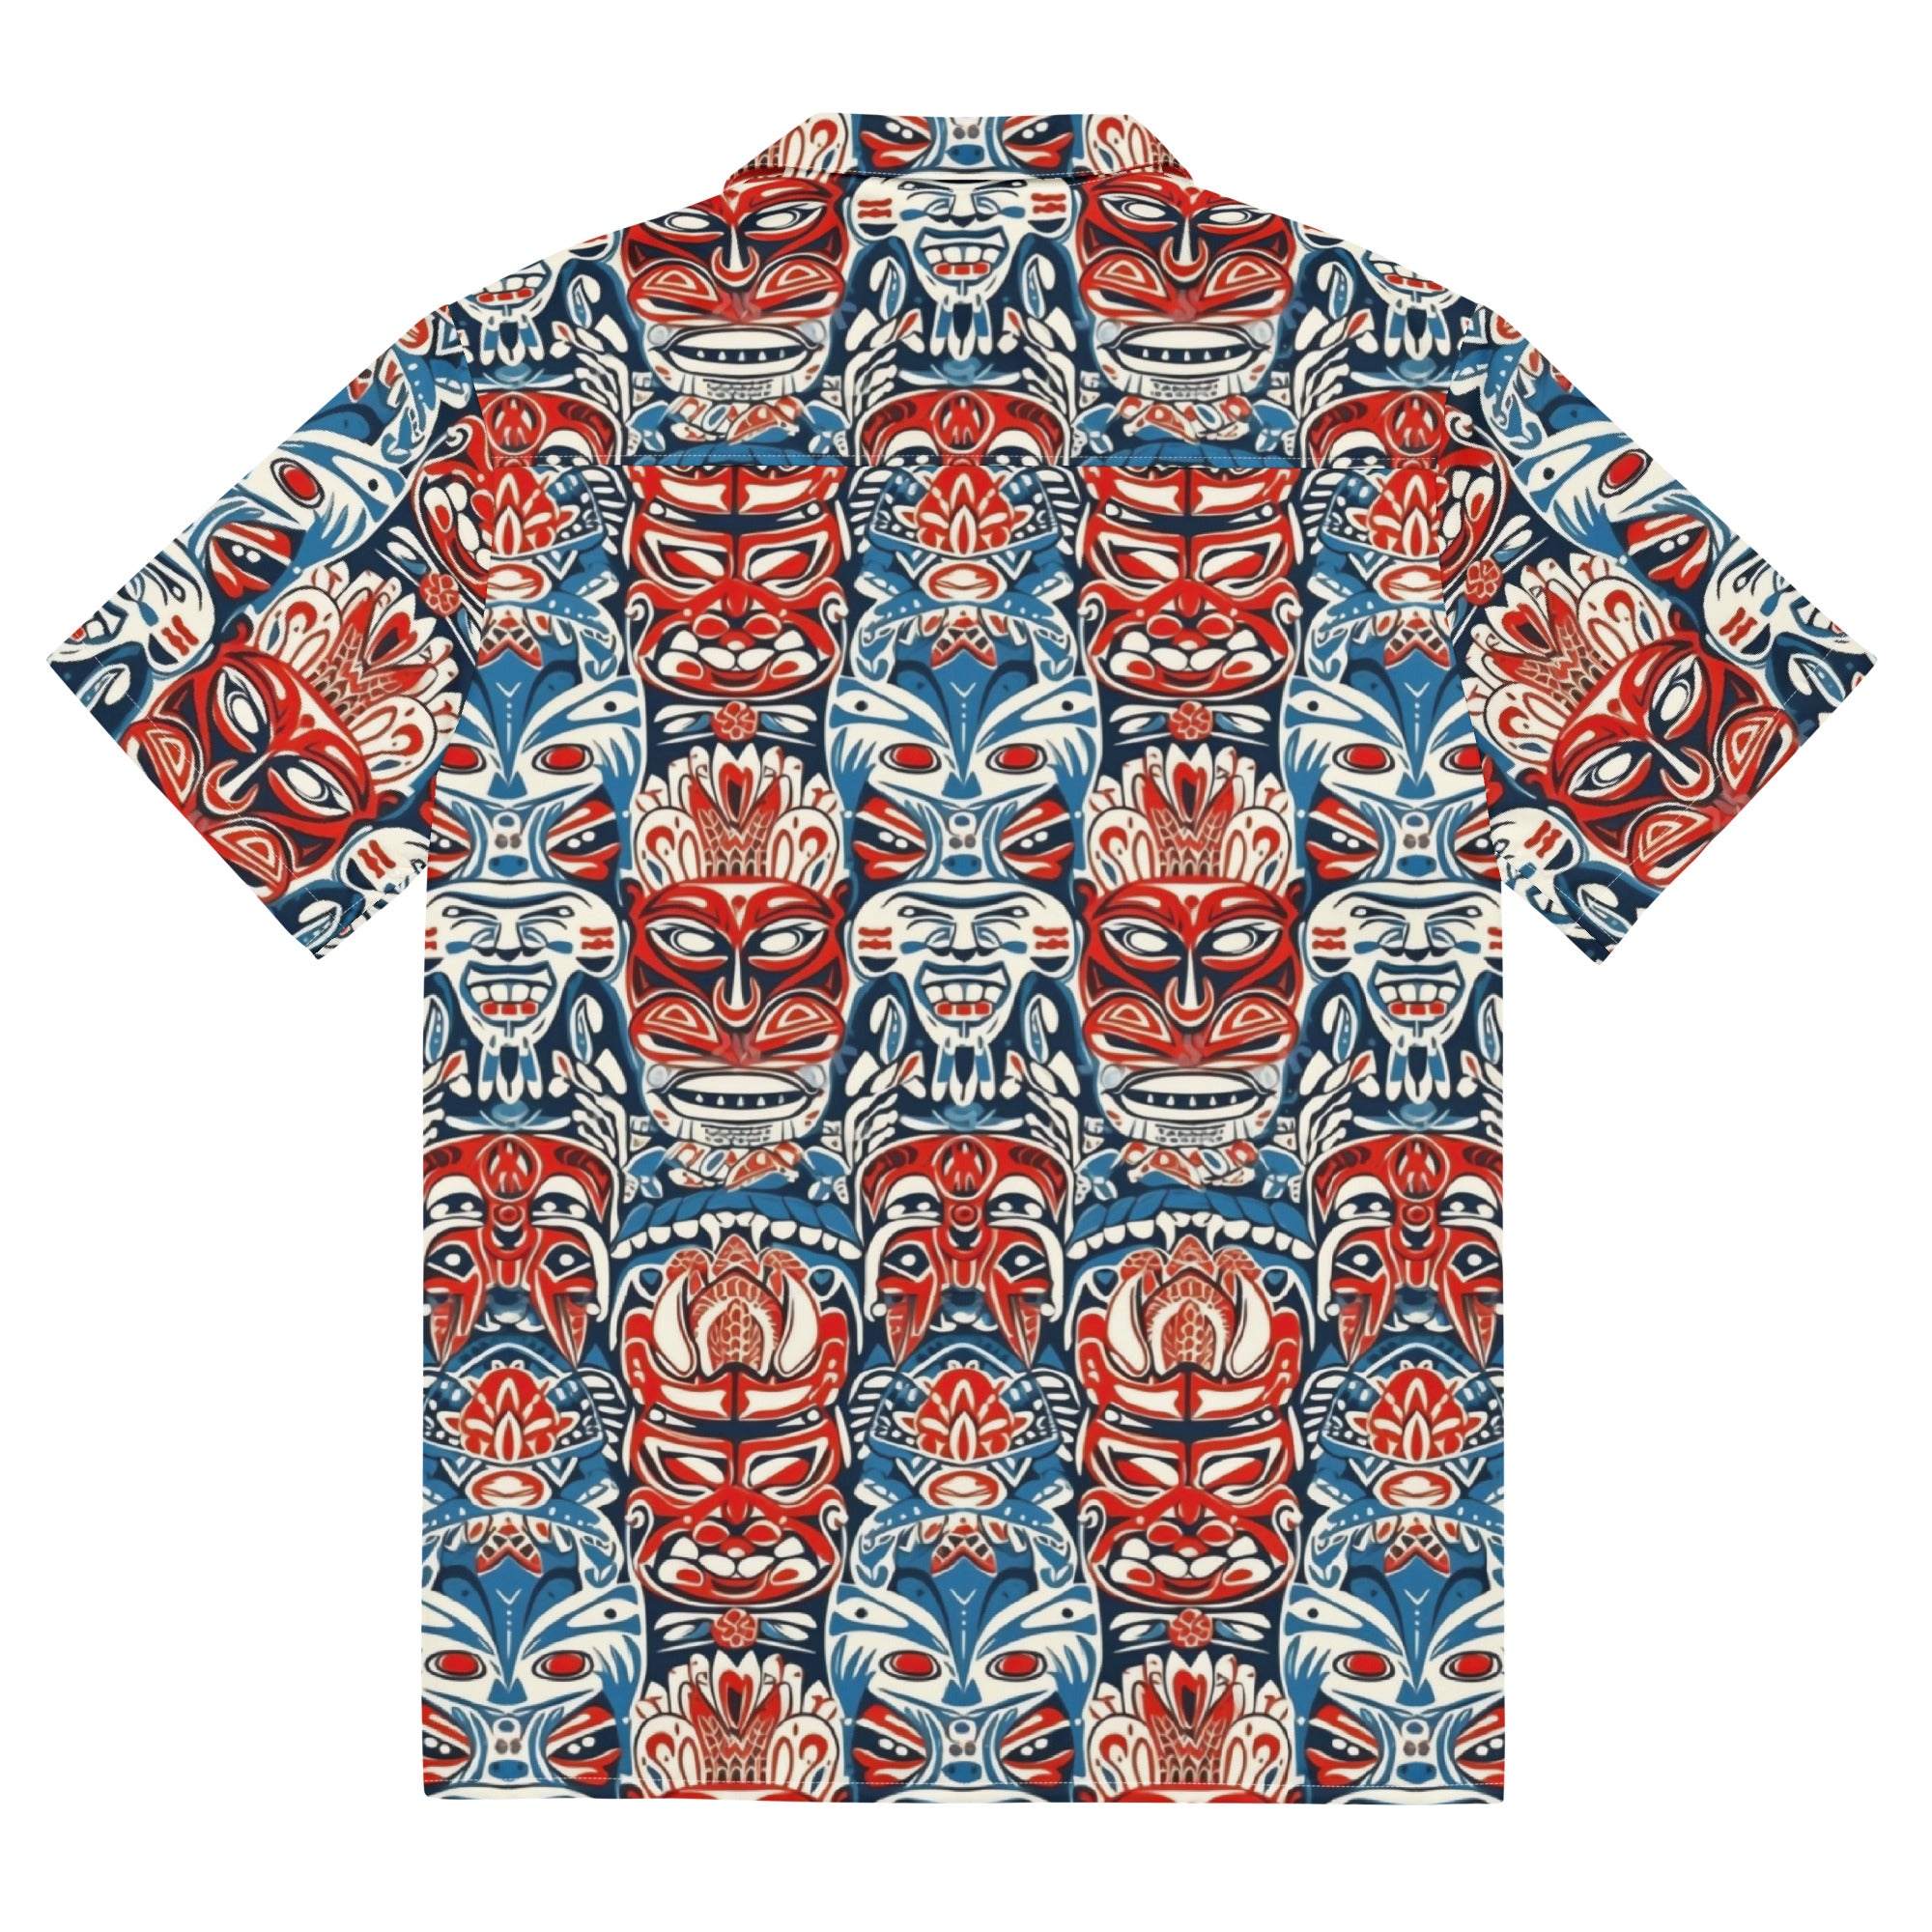 Freaky Deaky Tiki Hawaiian Shirt